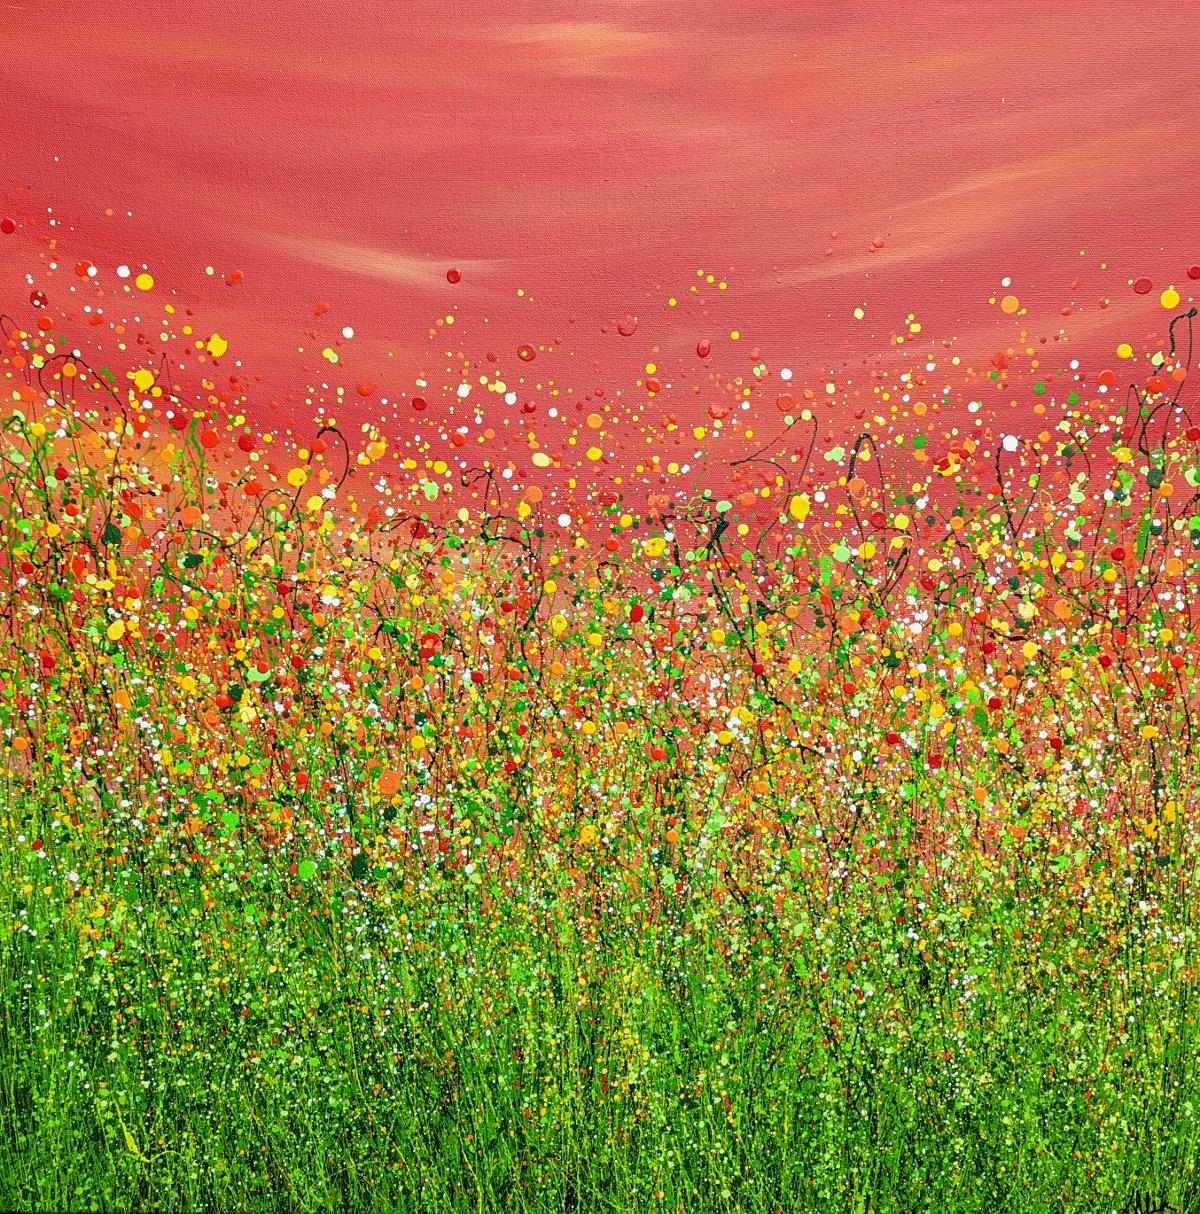 Le ciel rouge de la nuit n° 9, peinture de paysage expressionniste abstraite, art floral